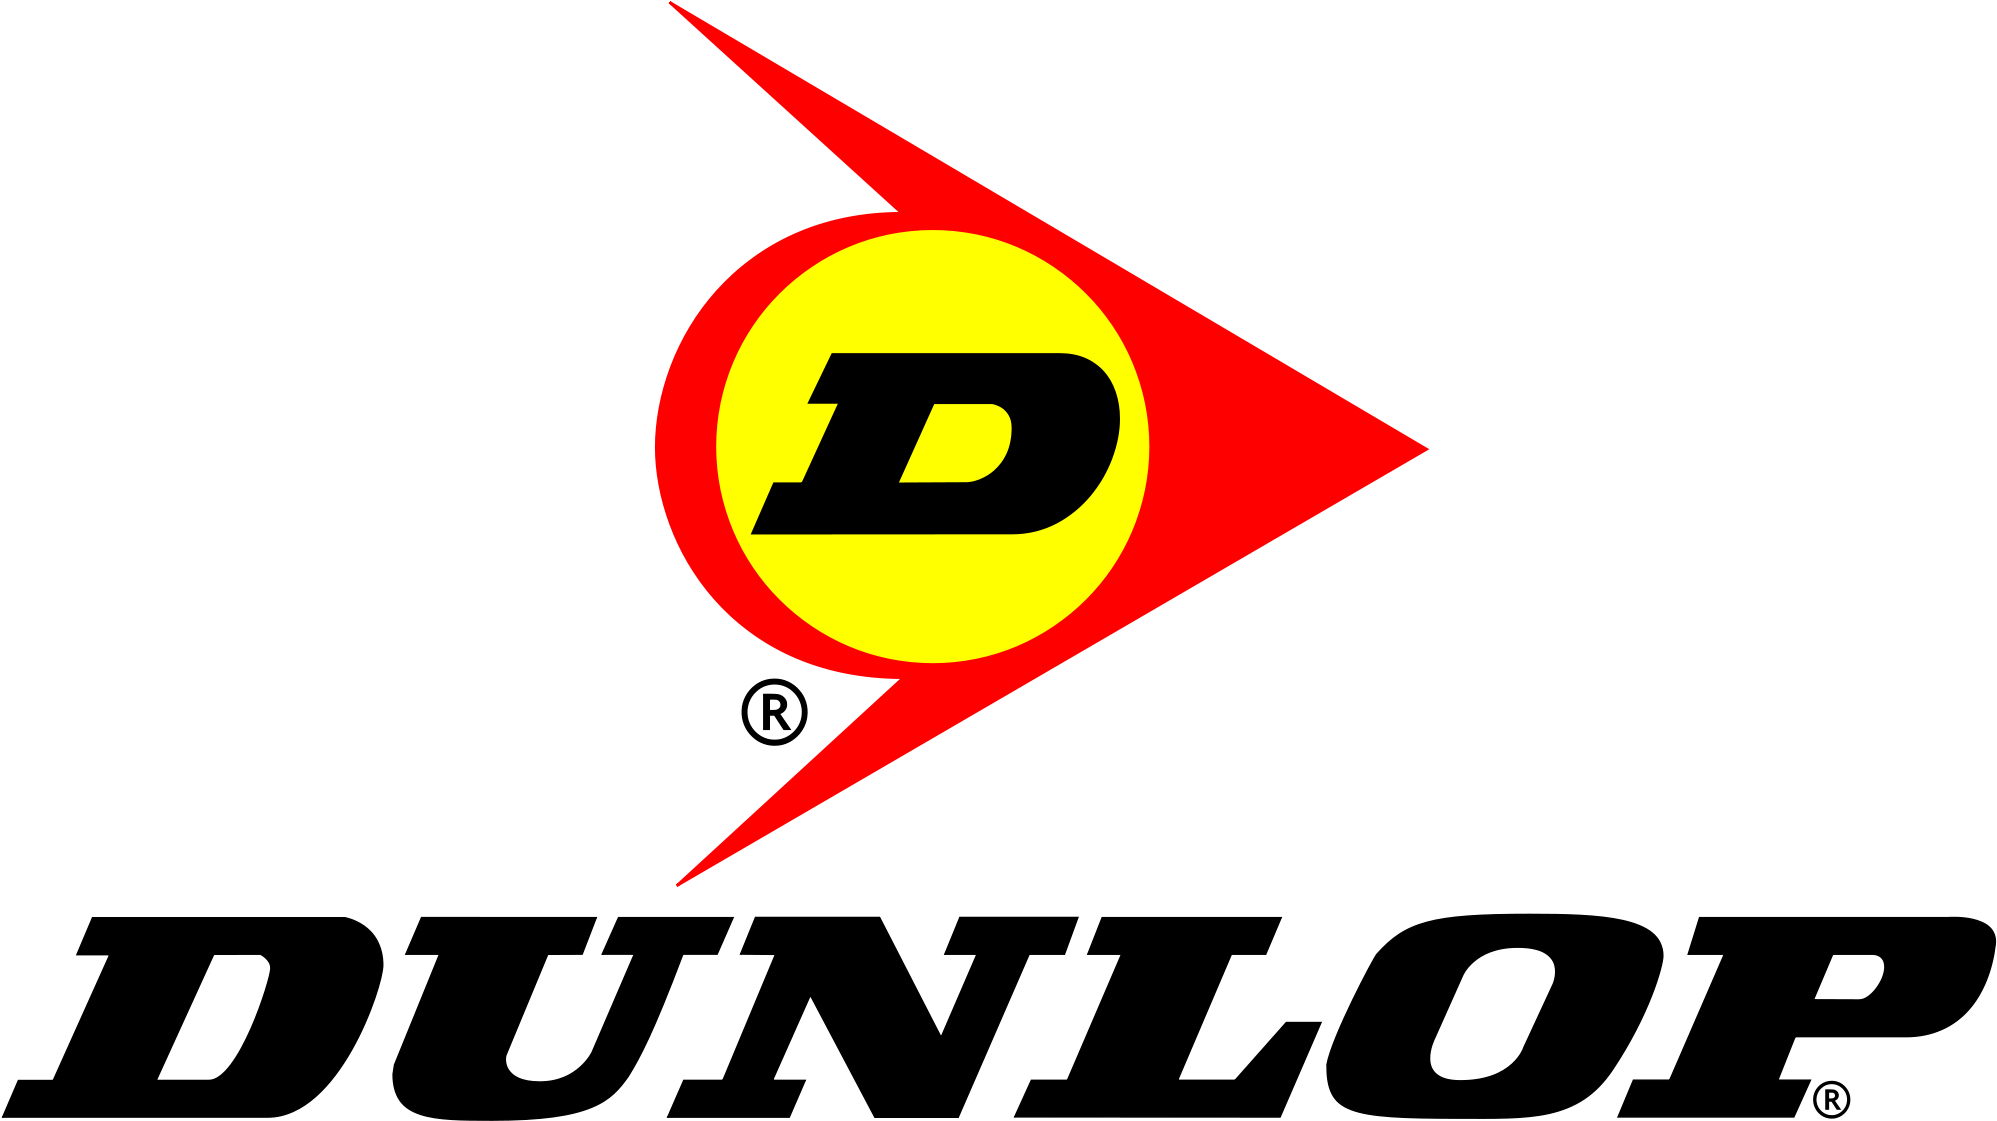 Dunlop Logo Hd Png - Dunlop Motorcycle Tires Logo (2560x1440), Png Download